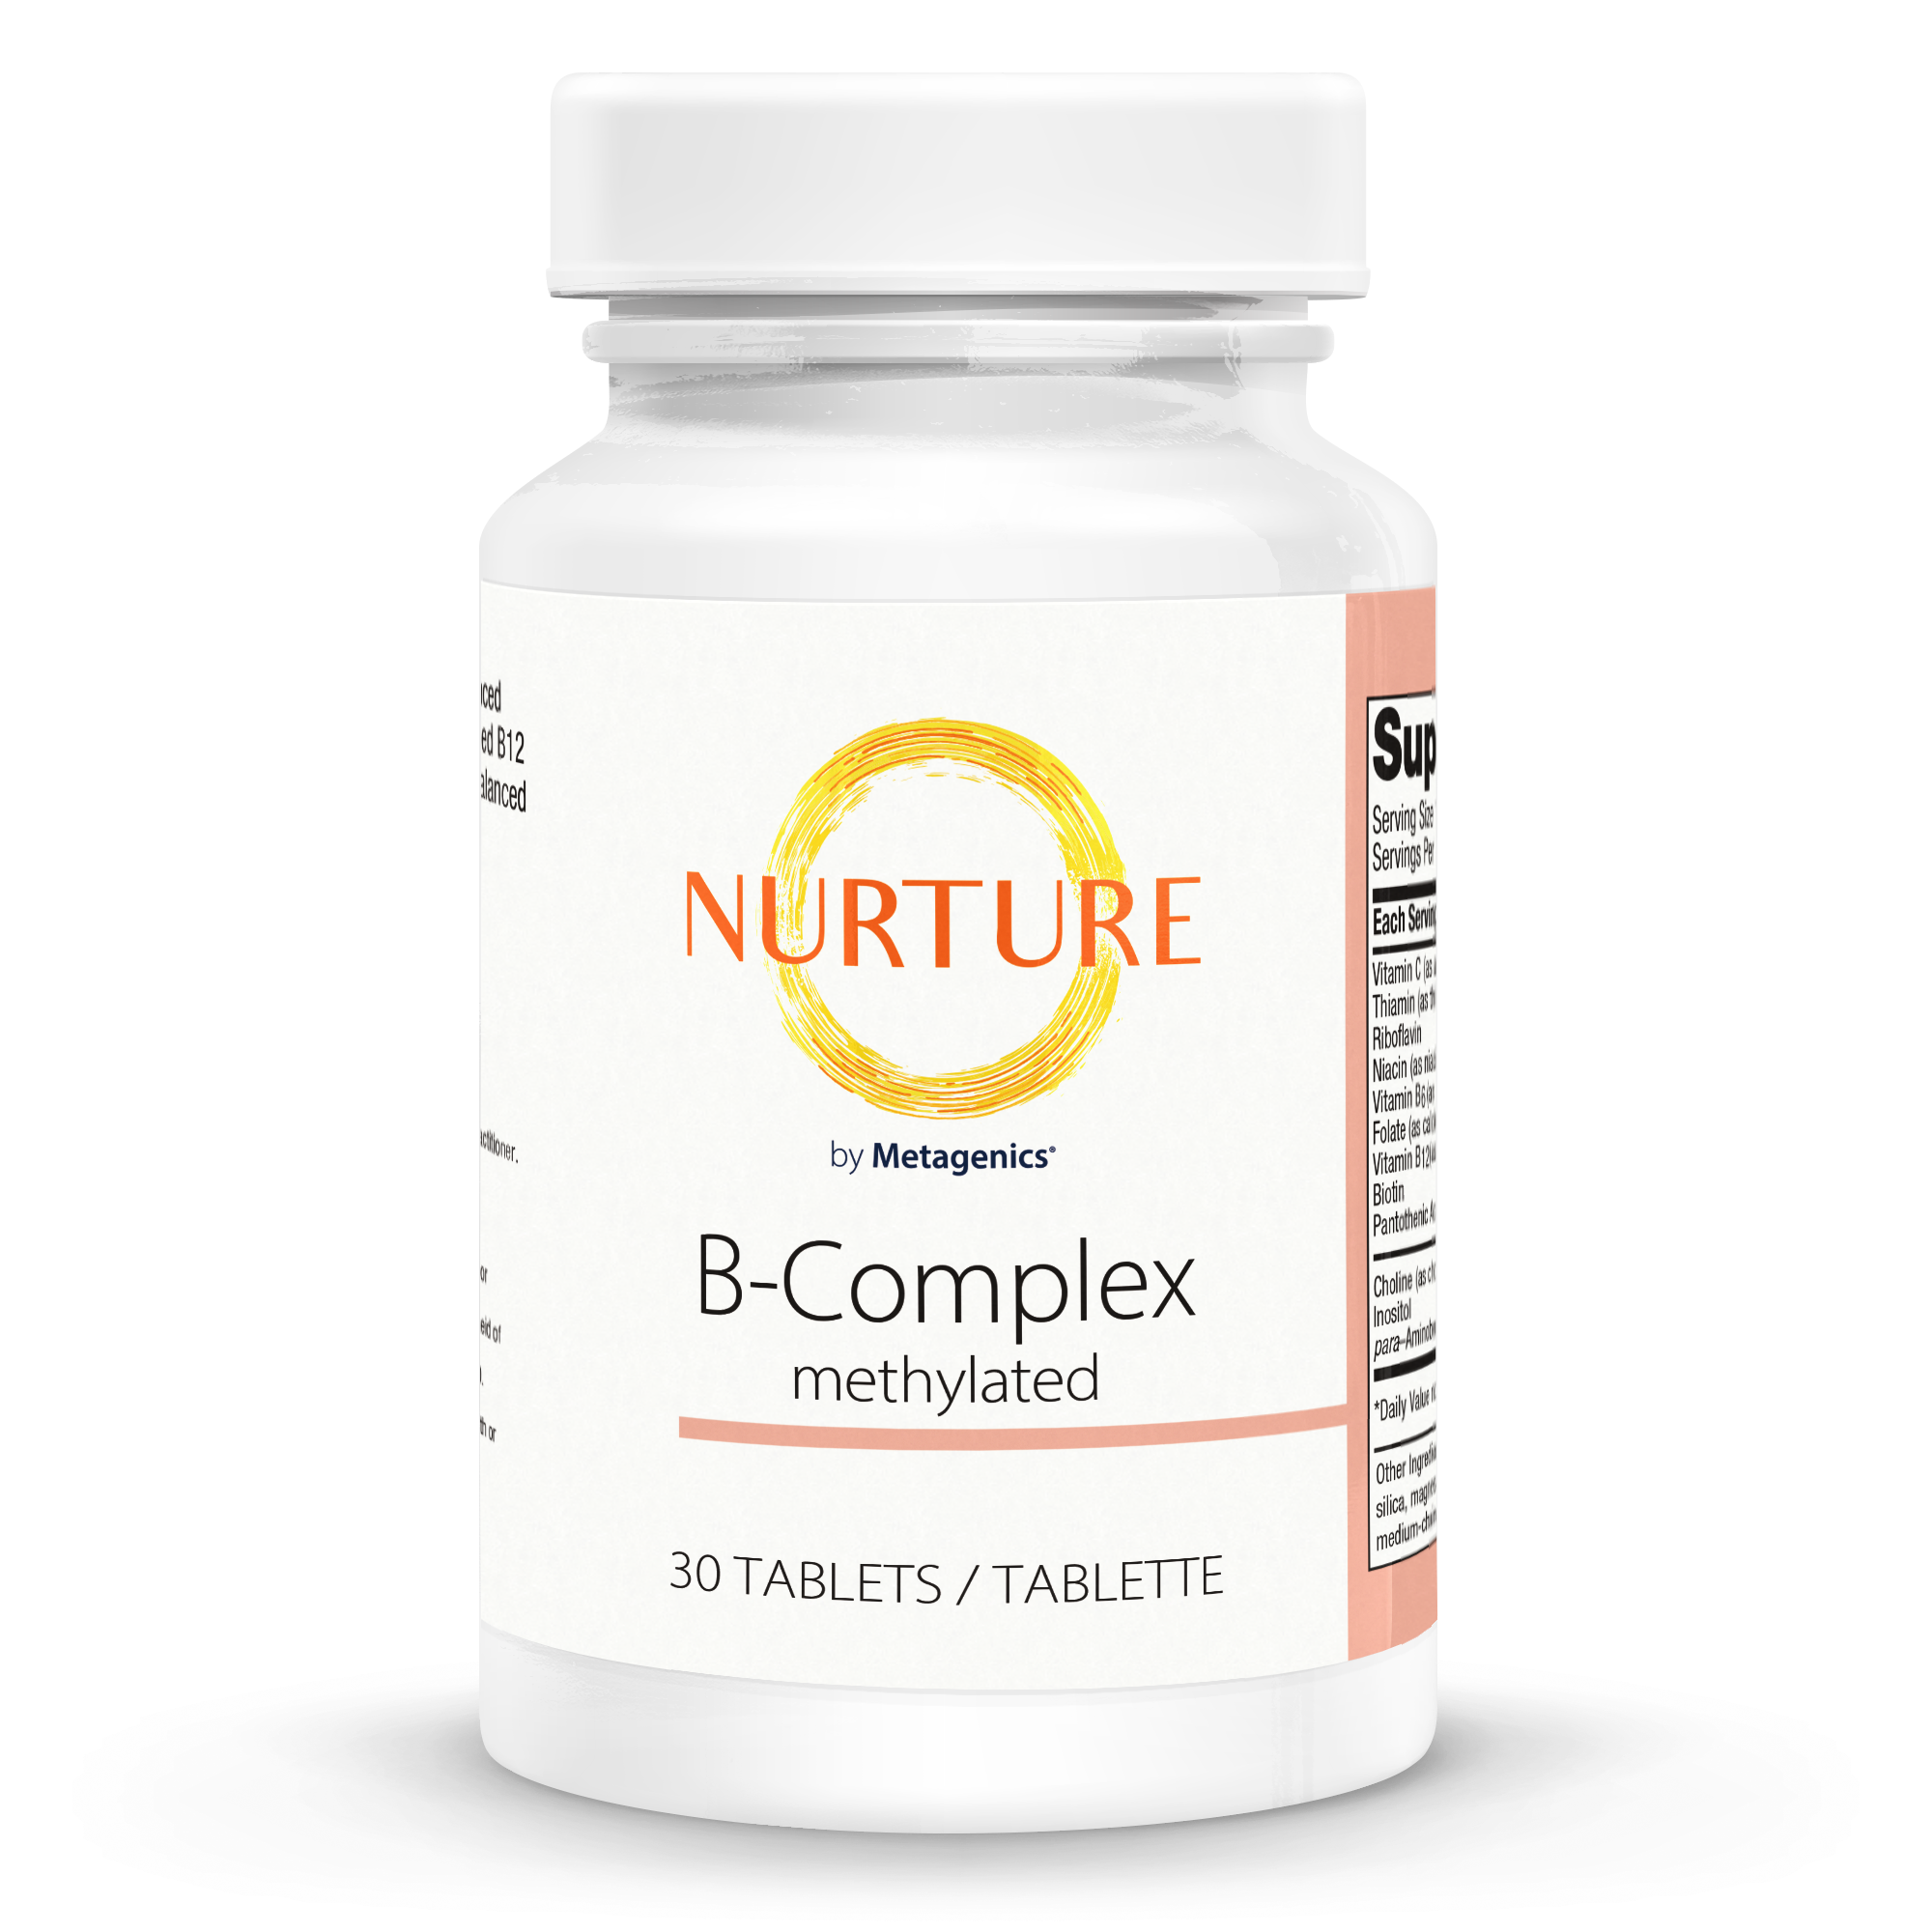 Nurture B-Complex